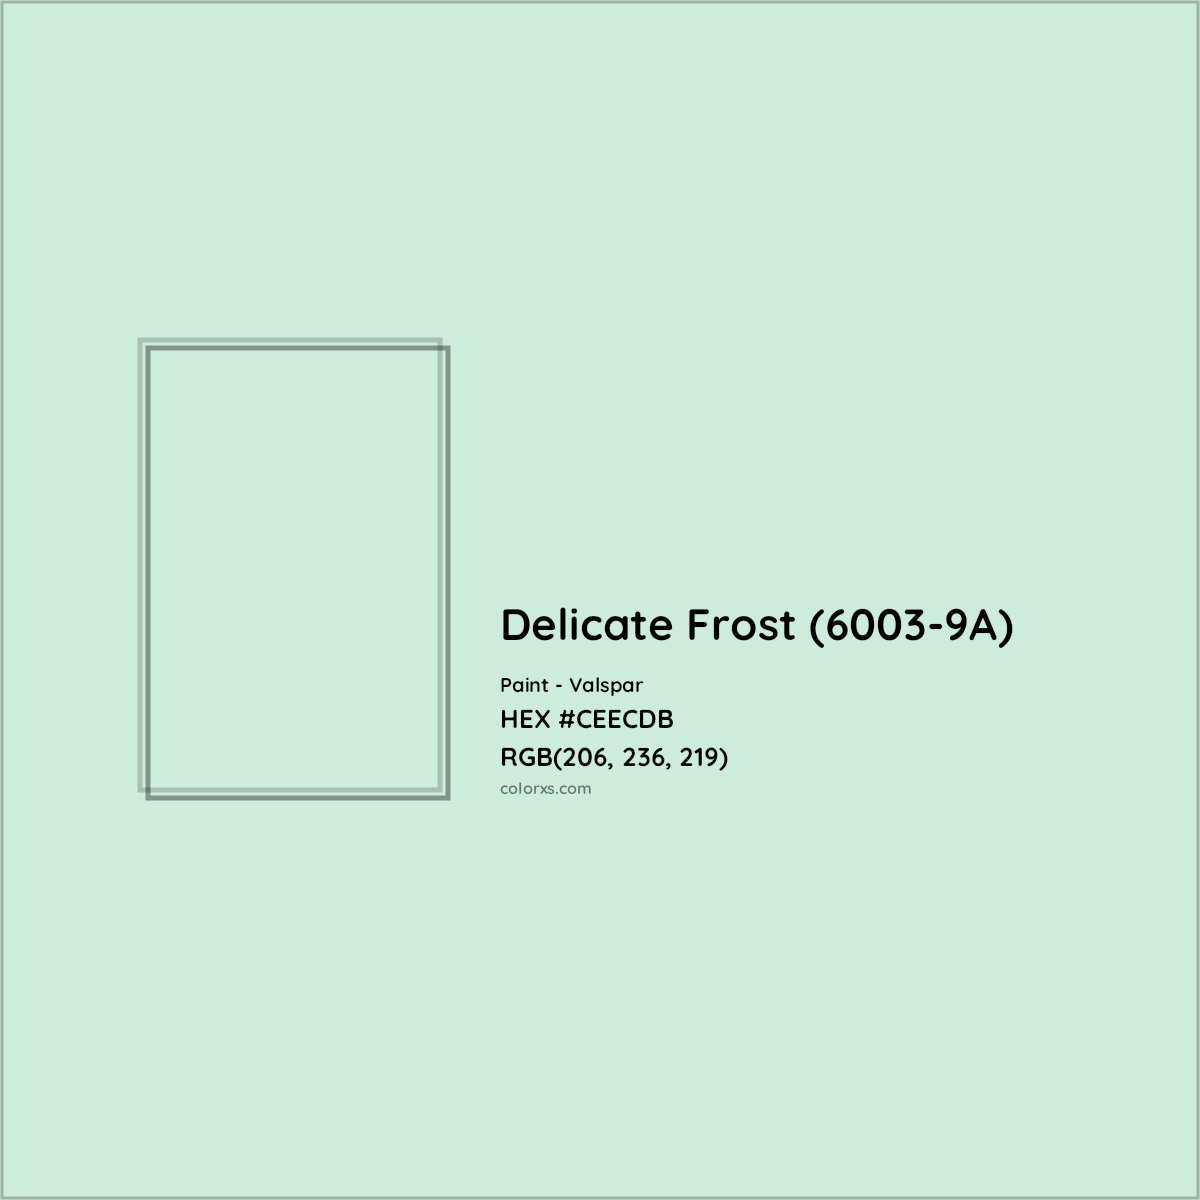 HEX #CEECDB Delicate Frost (6003-9A) Paint Valspar - Color Code